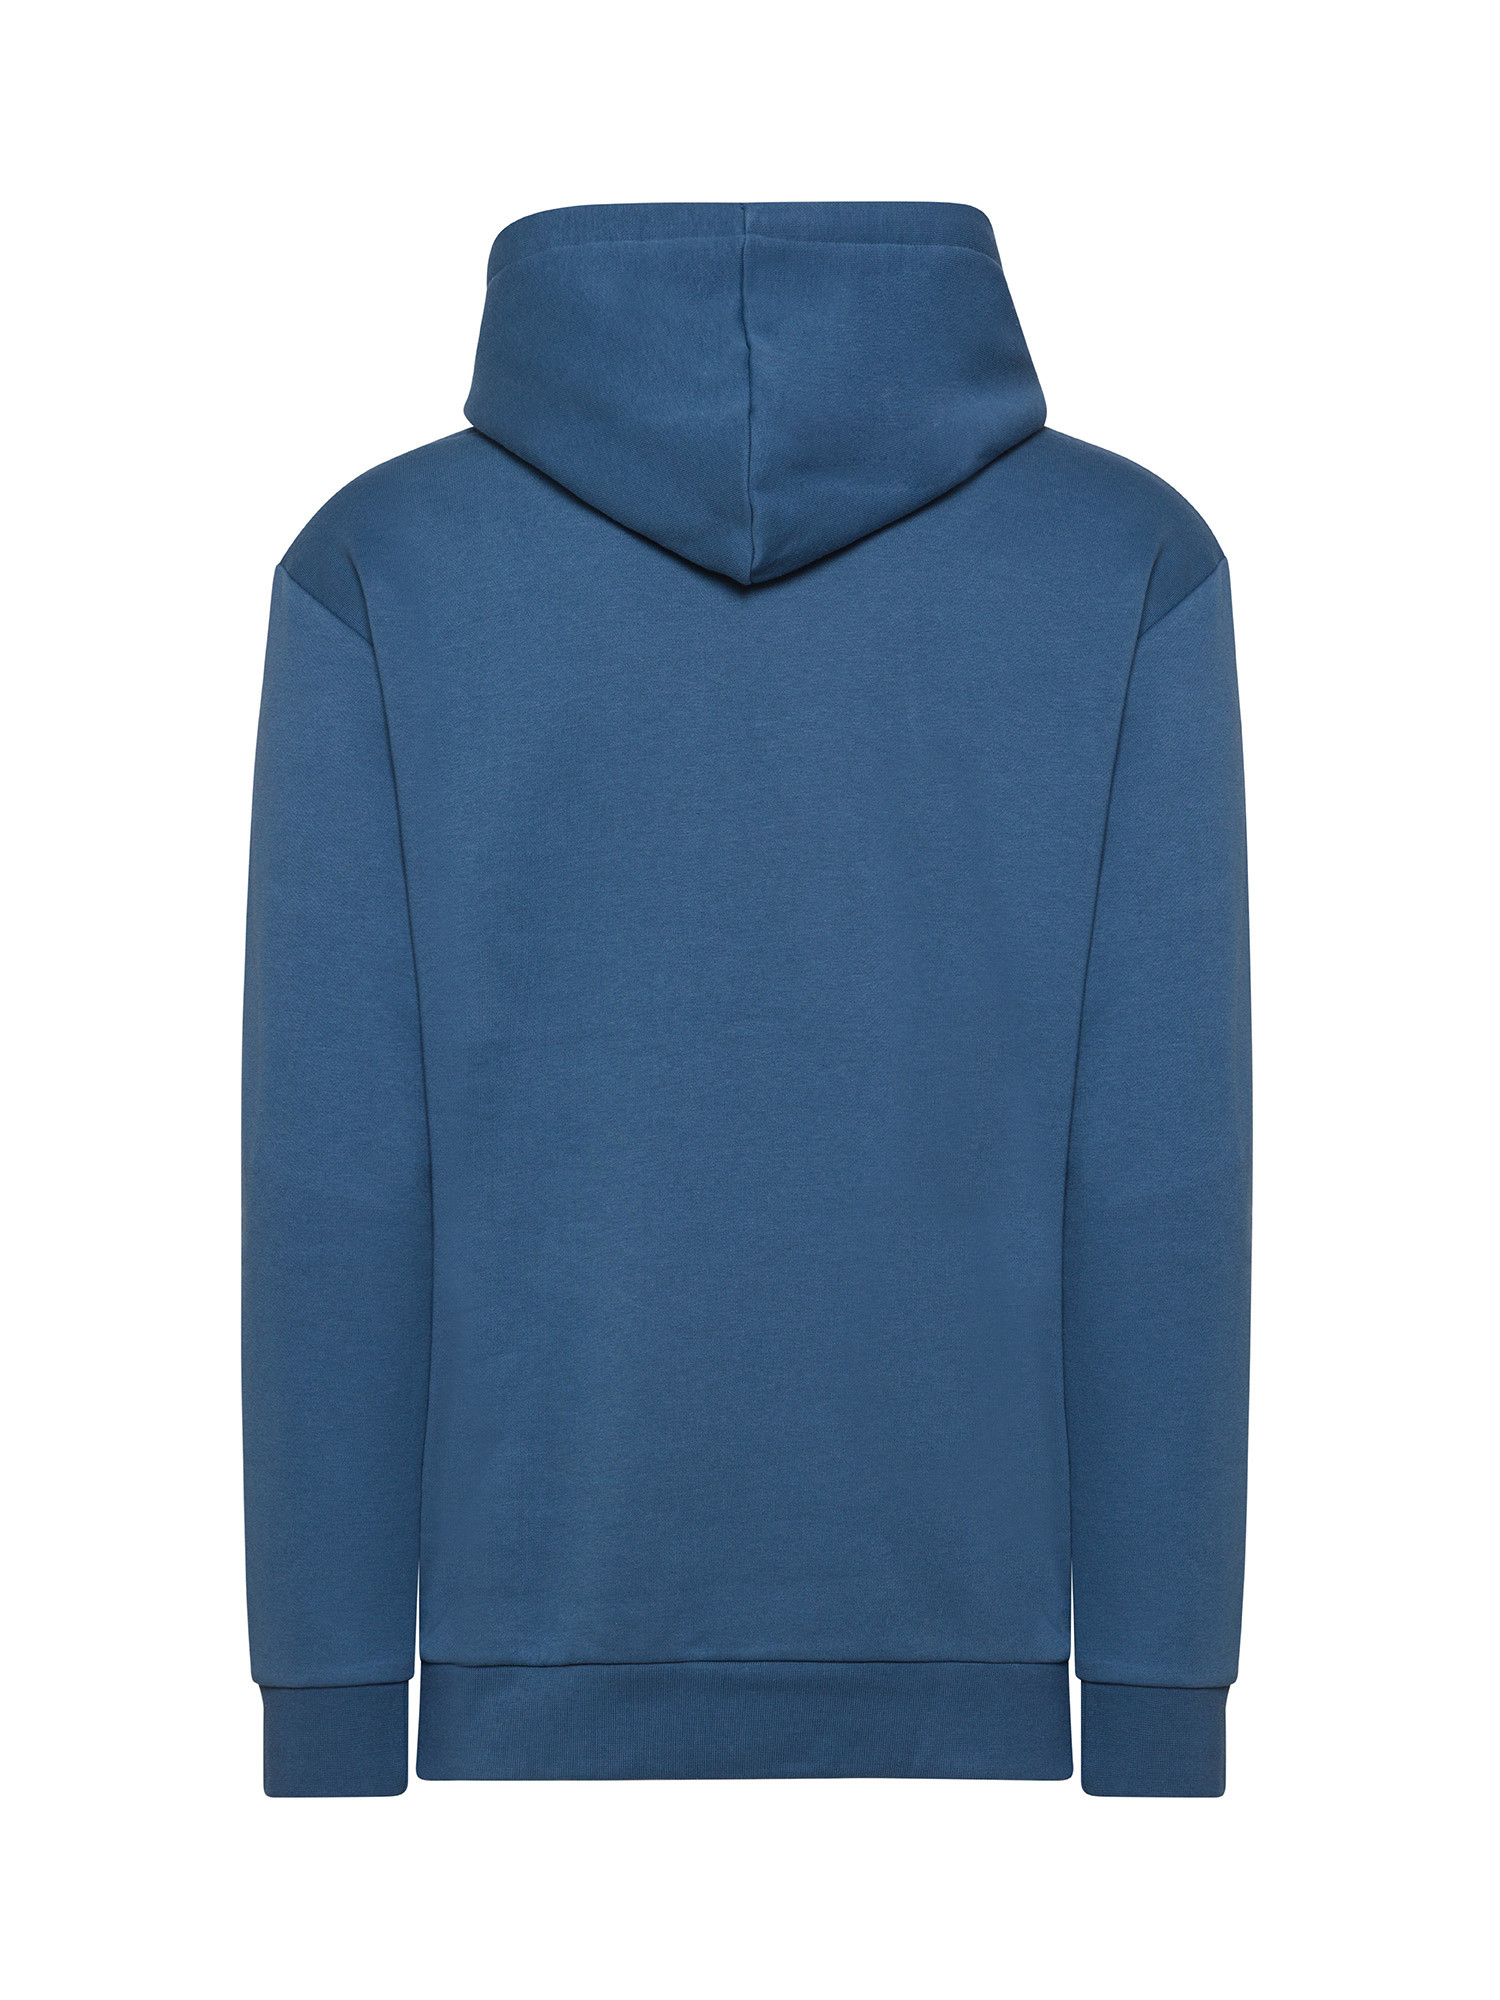 Adidas - Hooded sweatshirt with logo, Aviation Blue, large image number 1